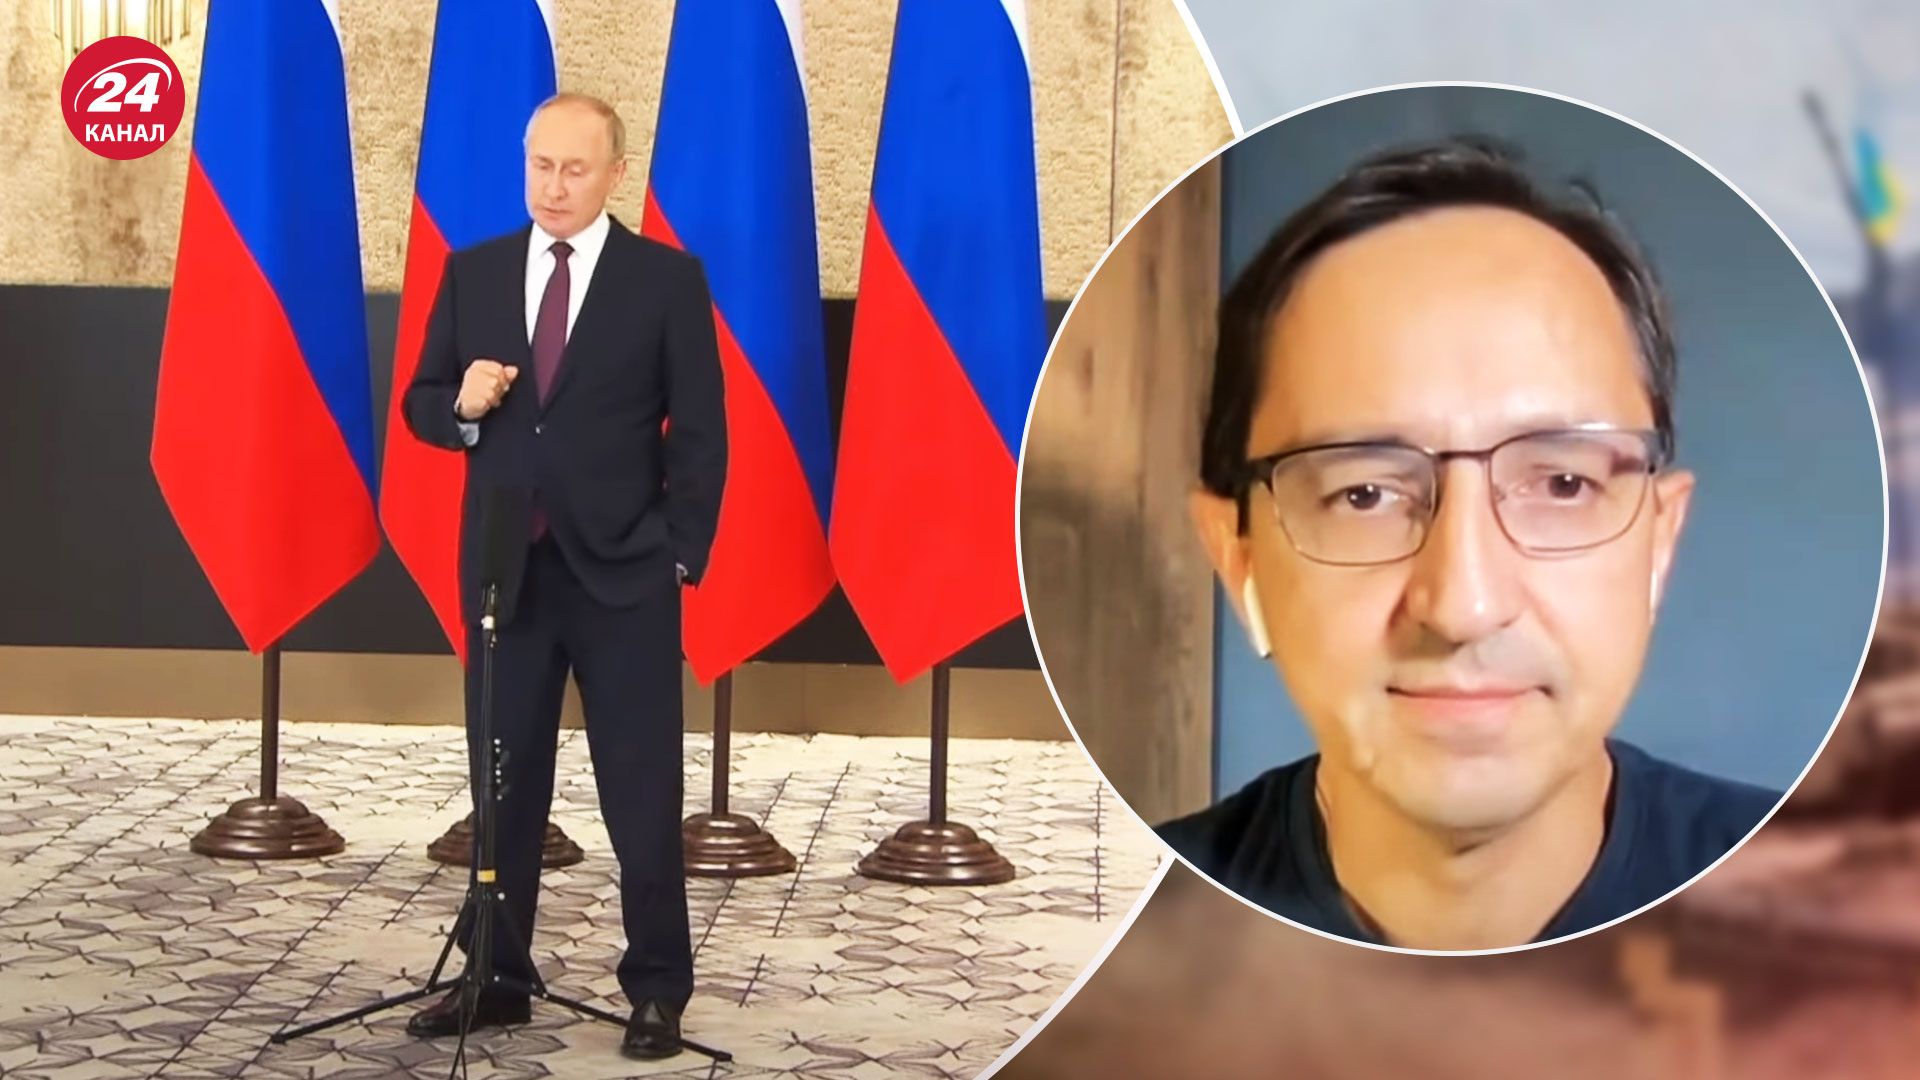 Признак слабости, – политический эксперт проанализировал выступление Путина на ШОС - 24 Канал